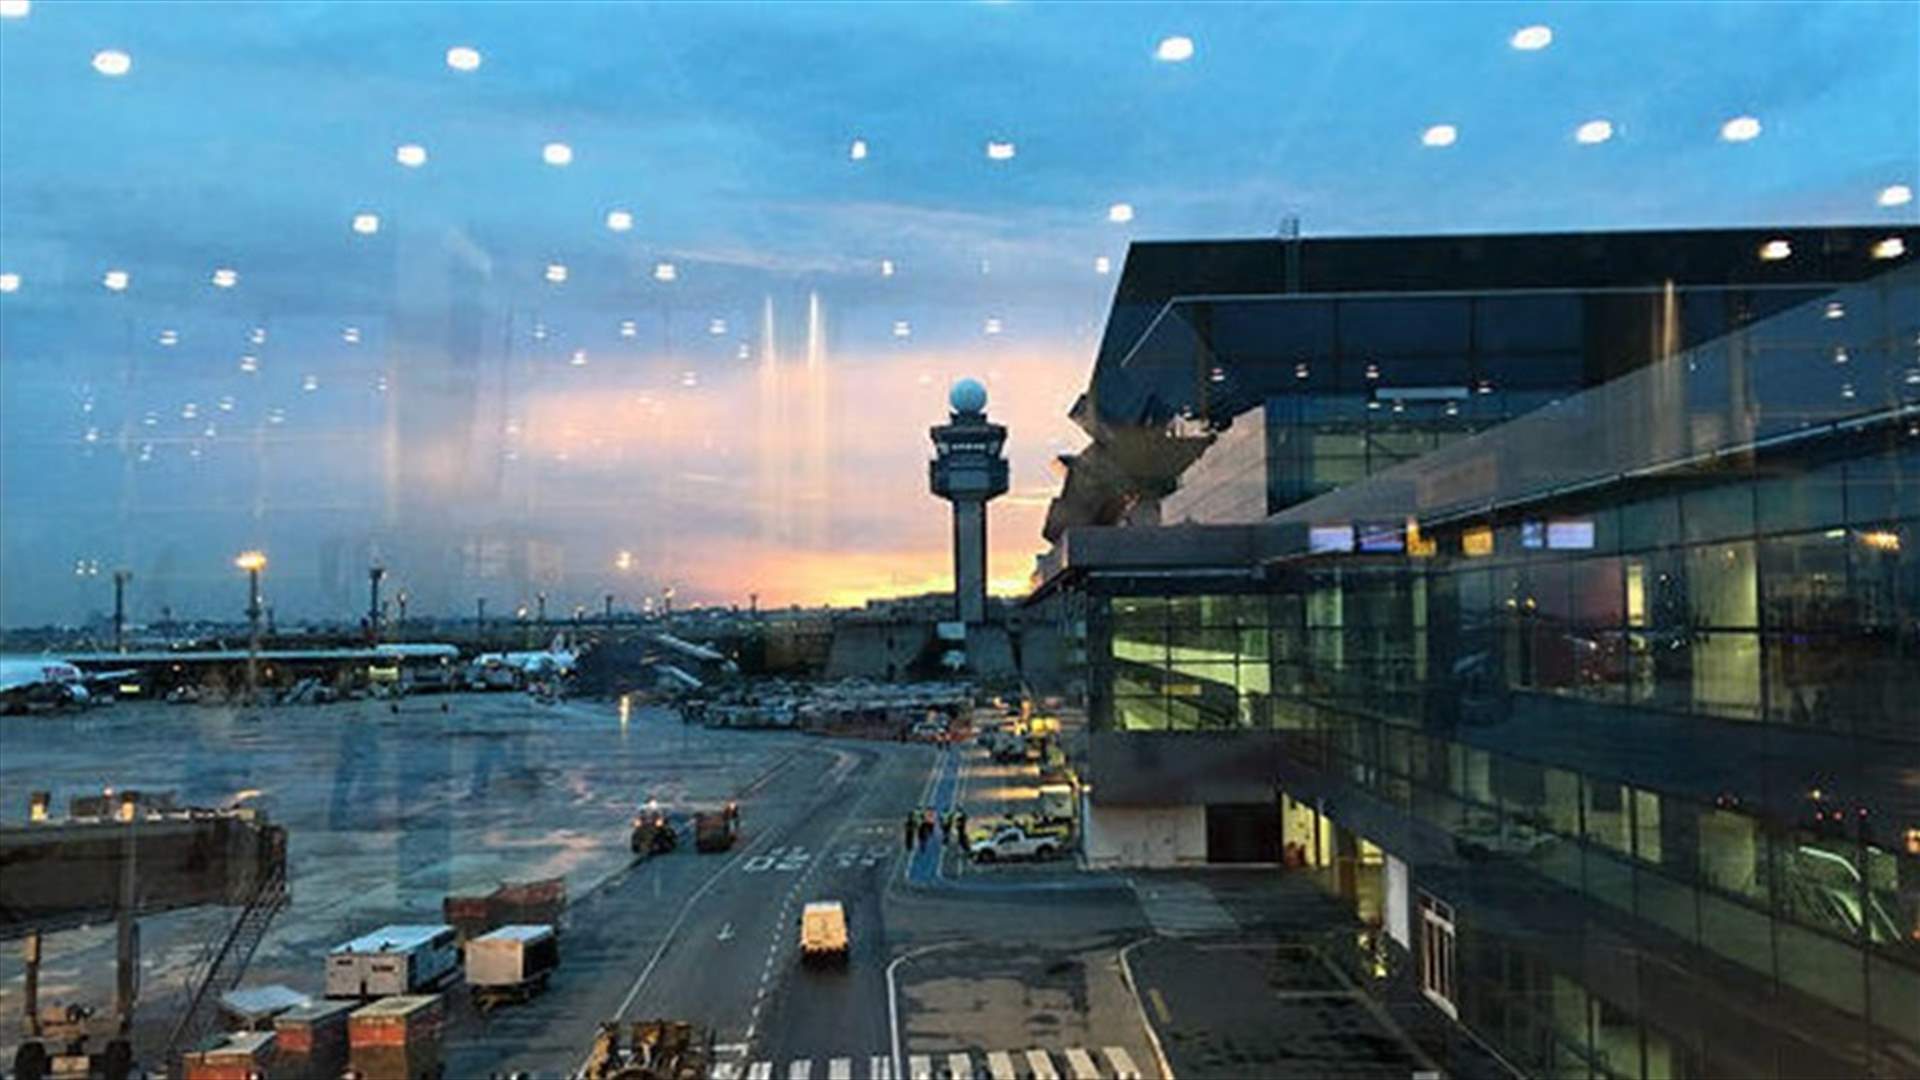 حظر السفر بسبب كورونا يترك المئات عالقين في أكبر مطار بالبرازيل